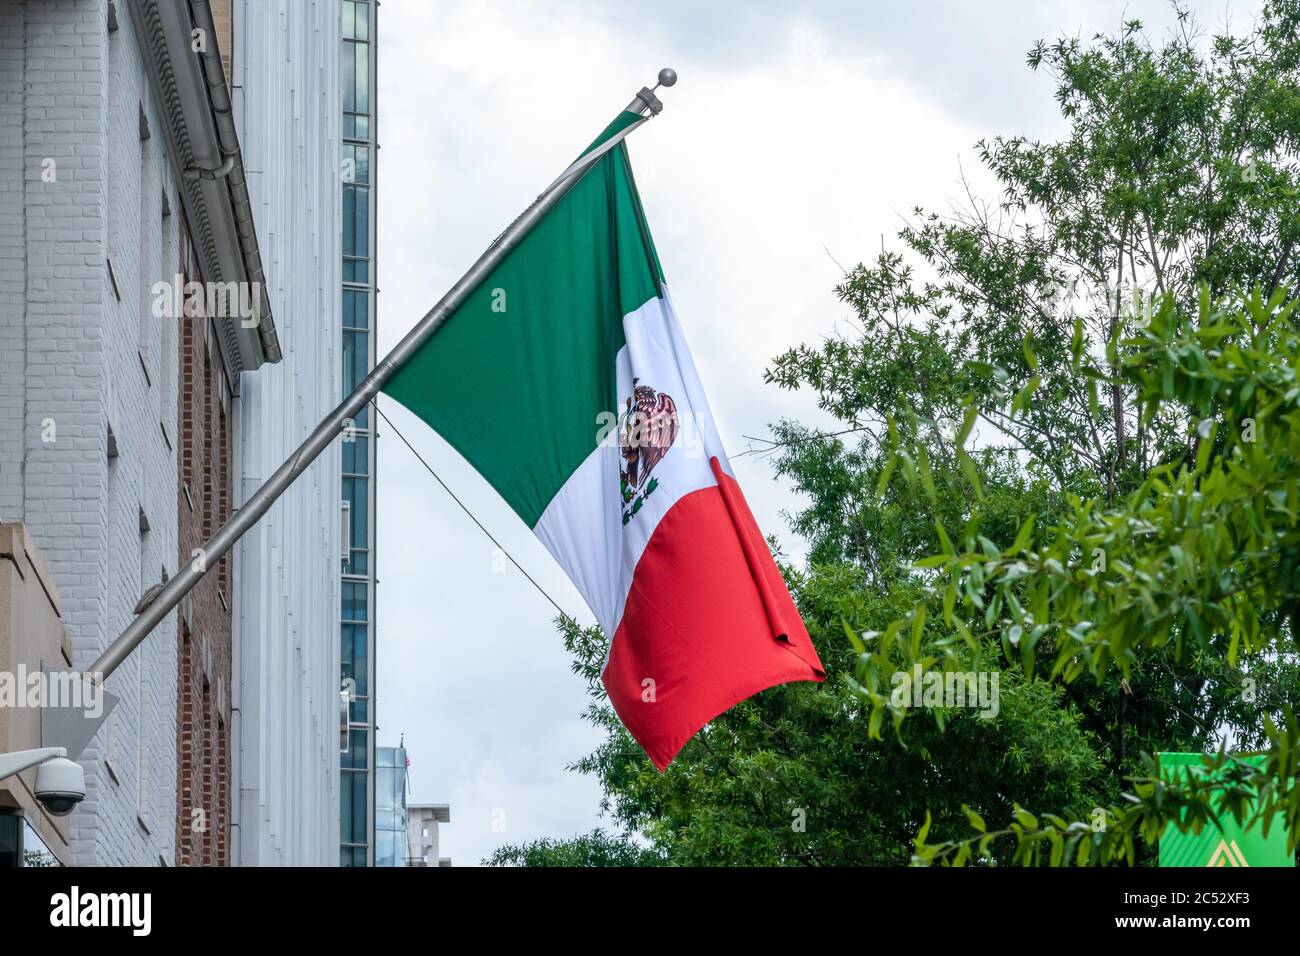 Washington, D.C., USA - juin 21 2020: Les drapeaux mexicains se mettent sur le poteau de drapeau à l'extérieur de l'ambassade du Mexique aux États-Unis d'Amérique. Banque D'Images